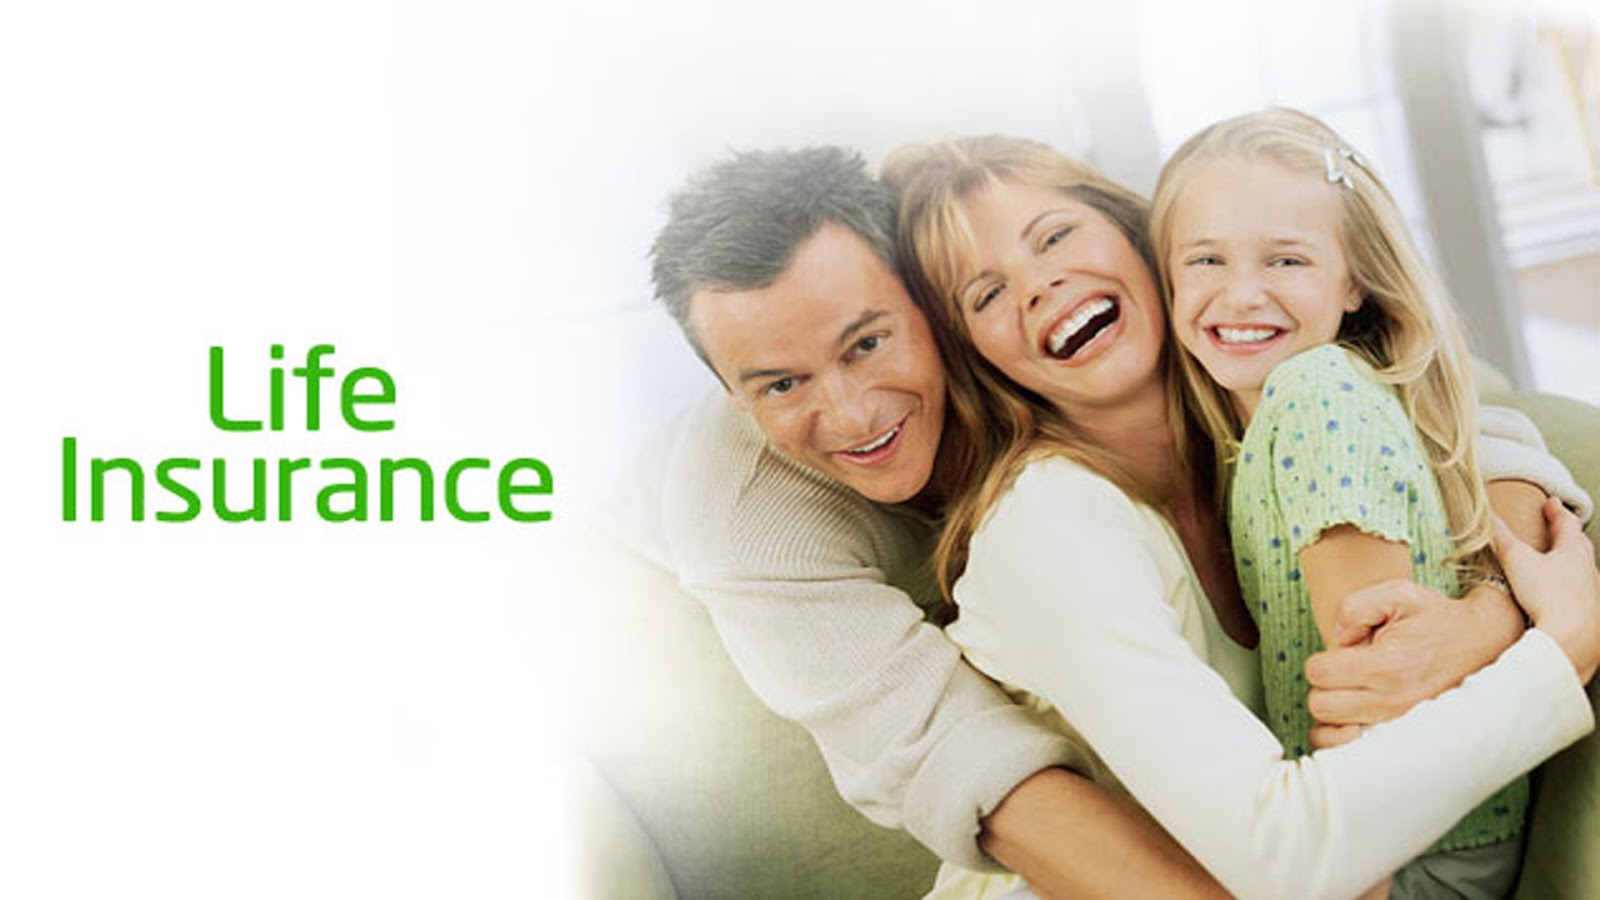 Страхование жизни тема. Life insurance. Life insurance фото. Страхование жизни. Life insurance Company.